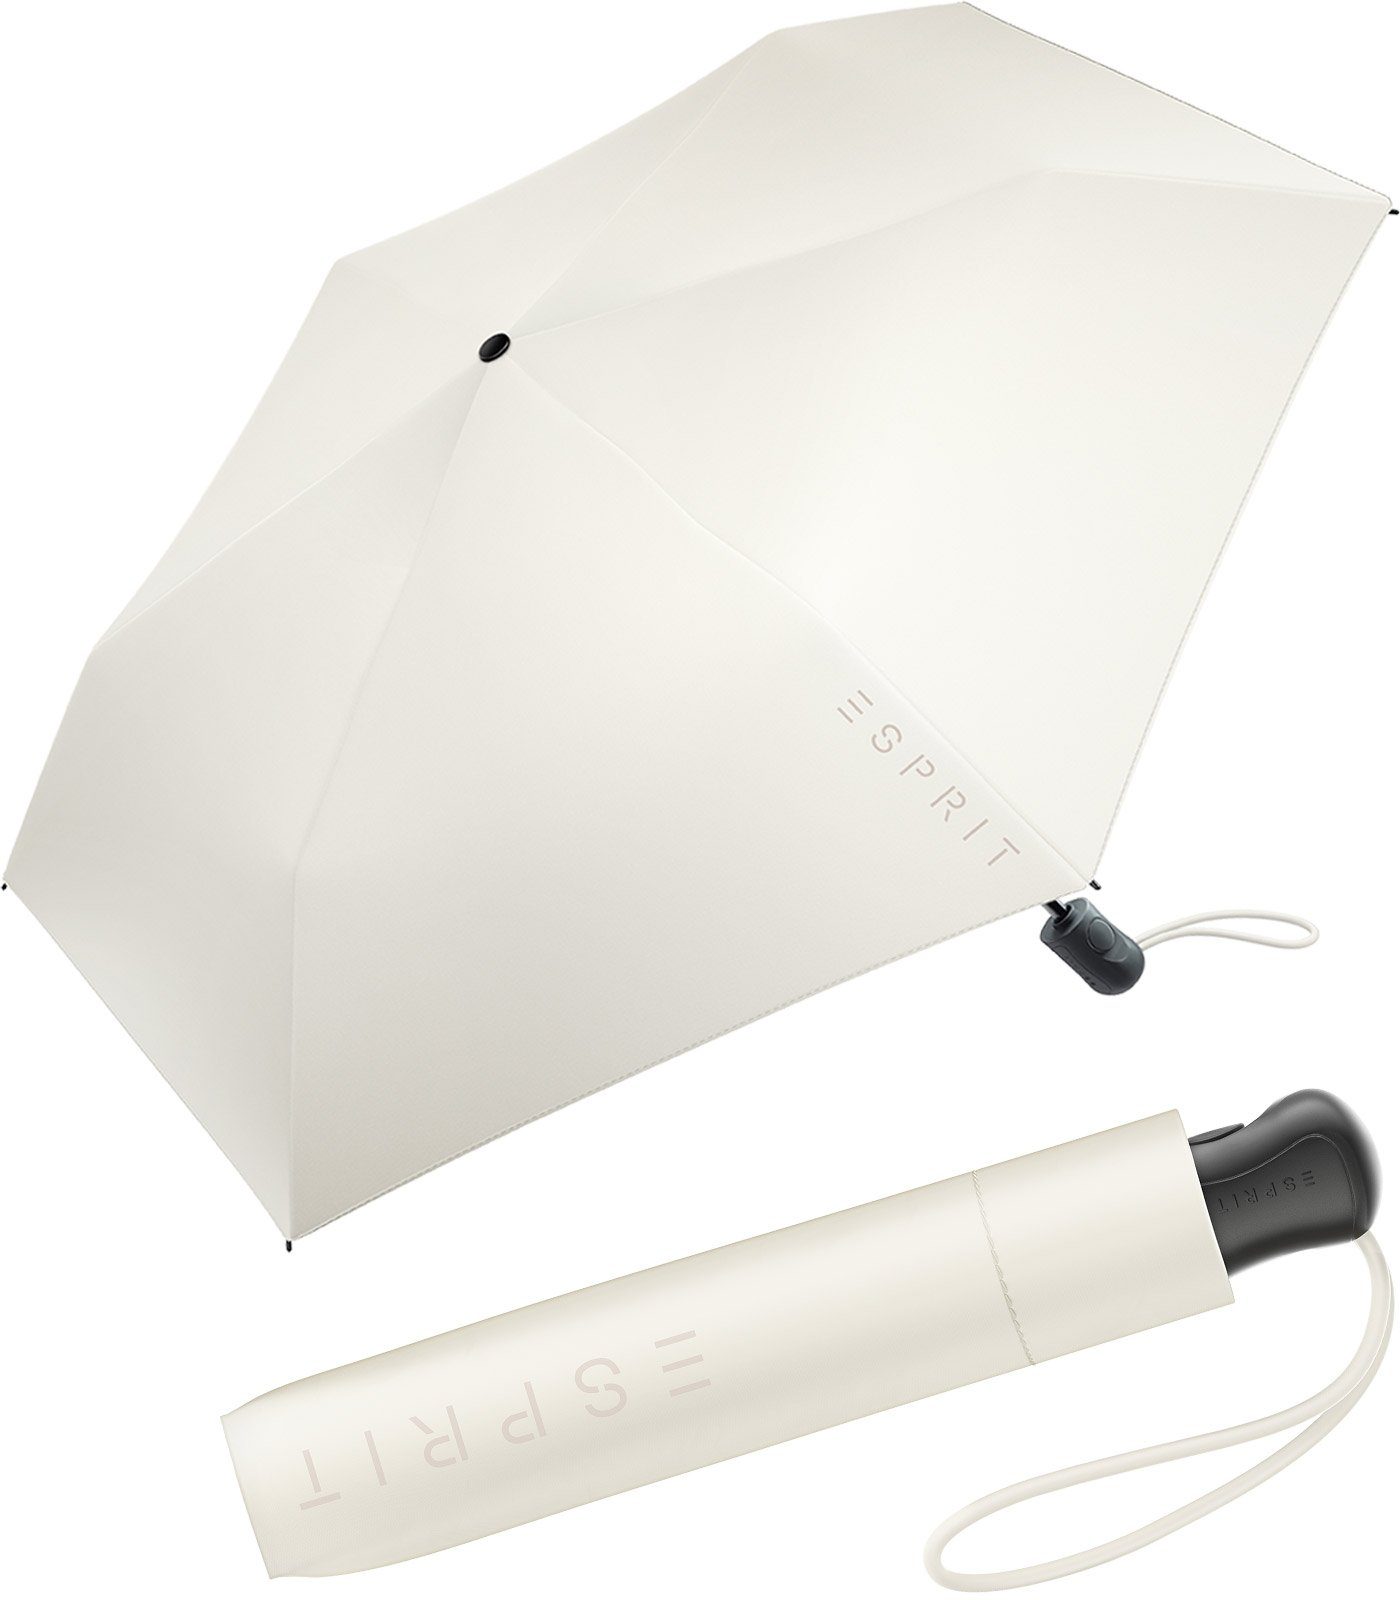 ivory stabil, den FJ leicht neuen Damen und Automatik Auf-Zu Trendfarben Easymatic Slimline Taschenregenschirm in 2022, Esprit